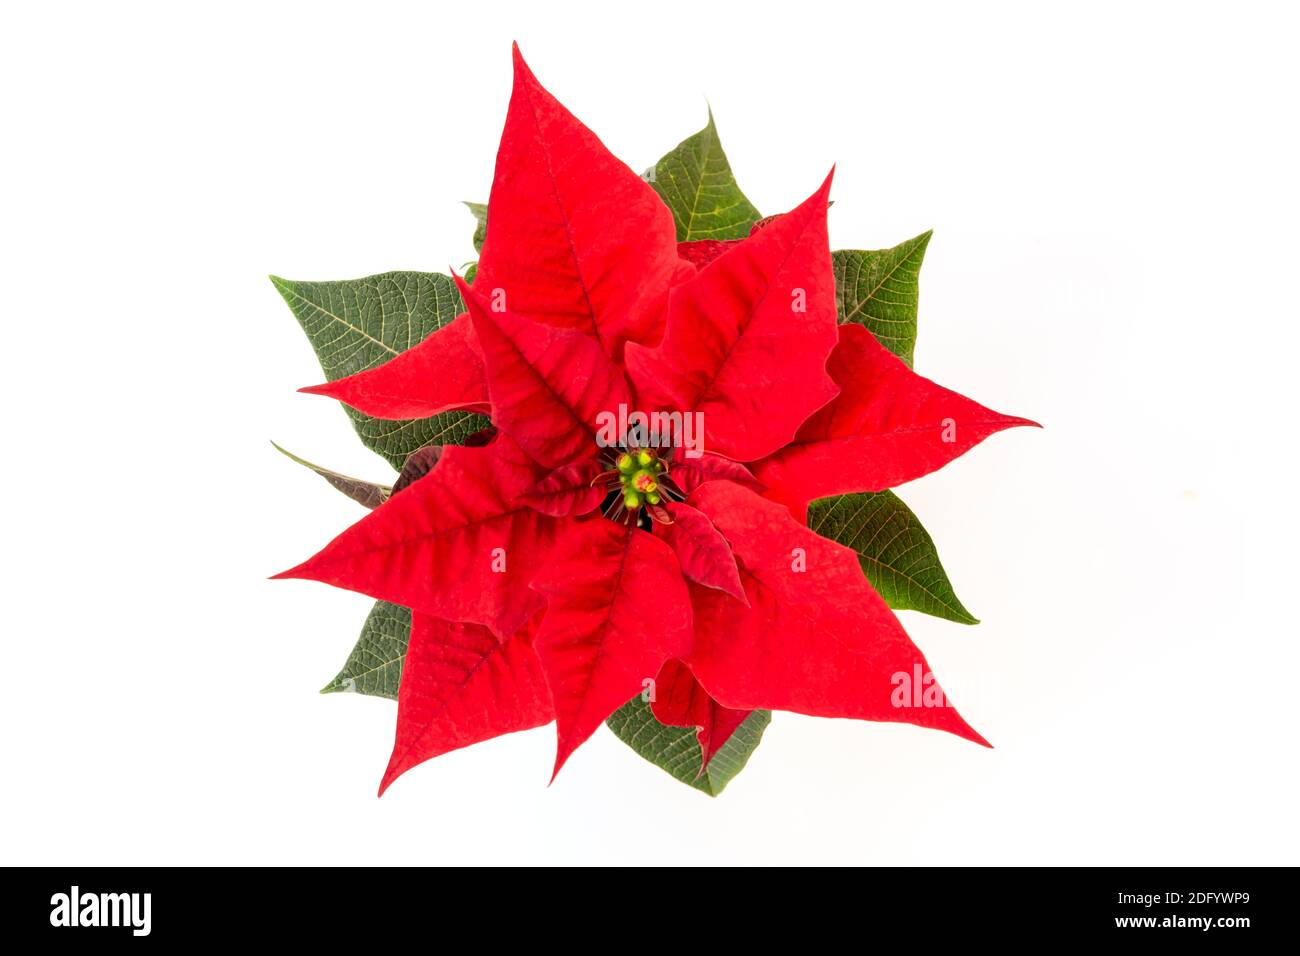 Vue de dessus d'une fleur de poinsettia rouge de Noël isolée dessus arrière-plan blanc Banque D'Images